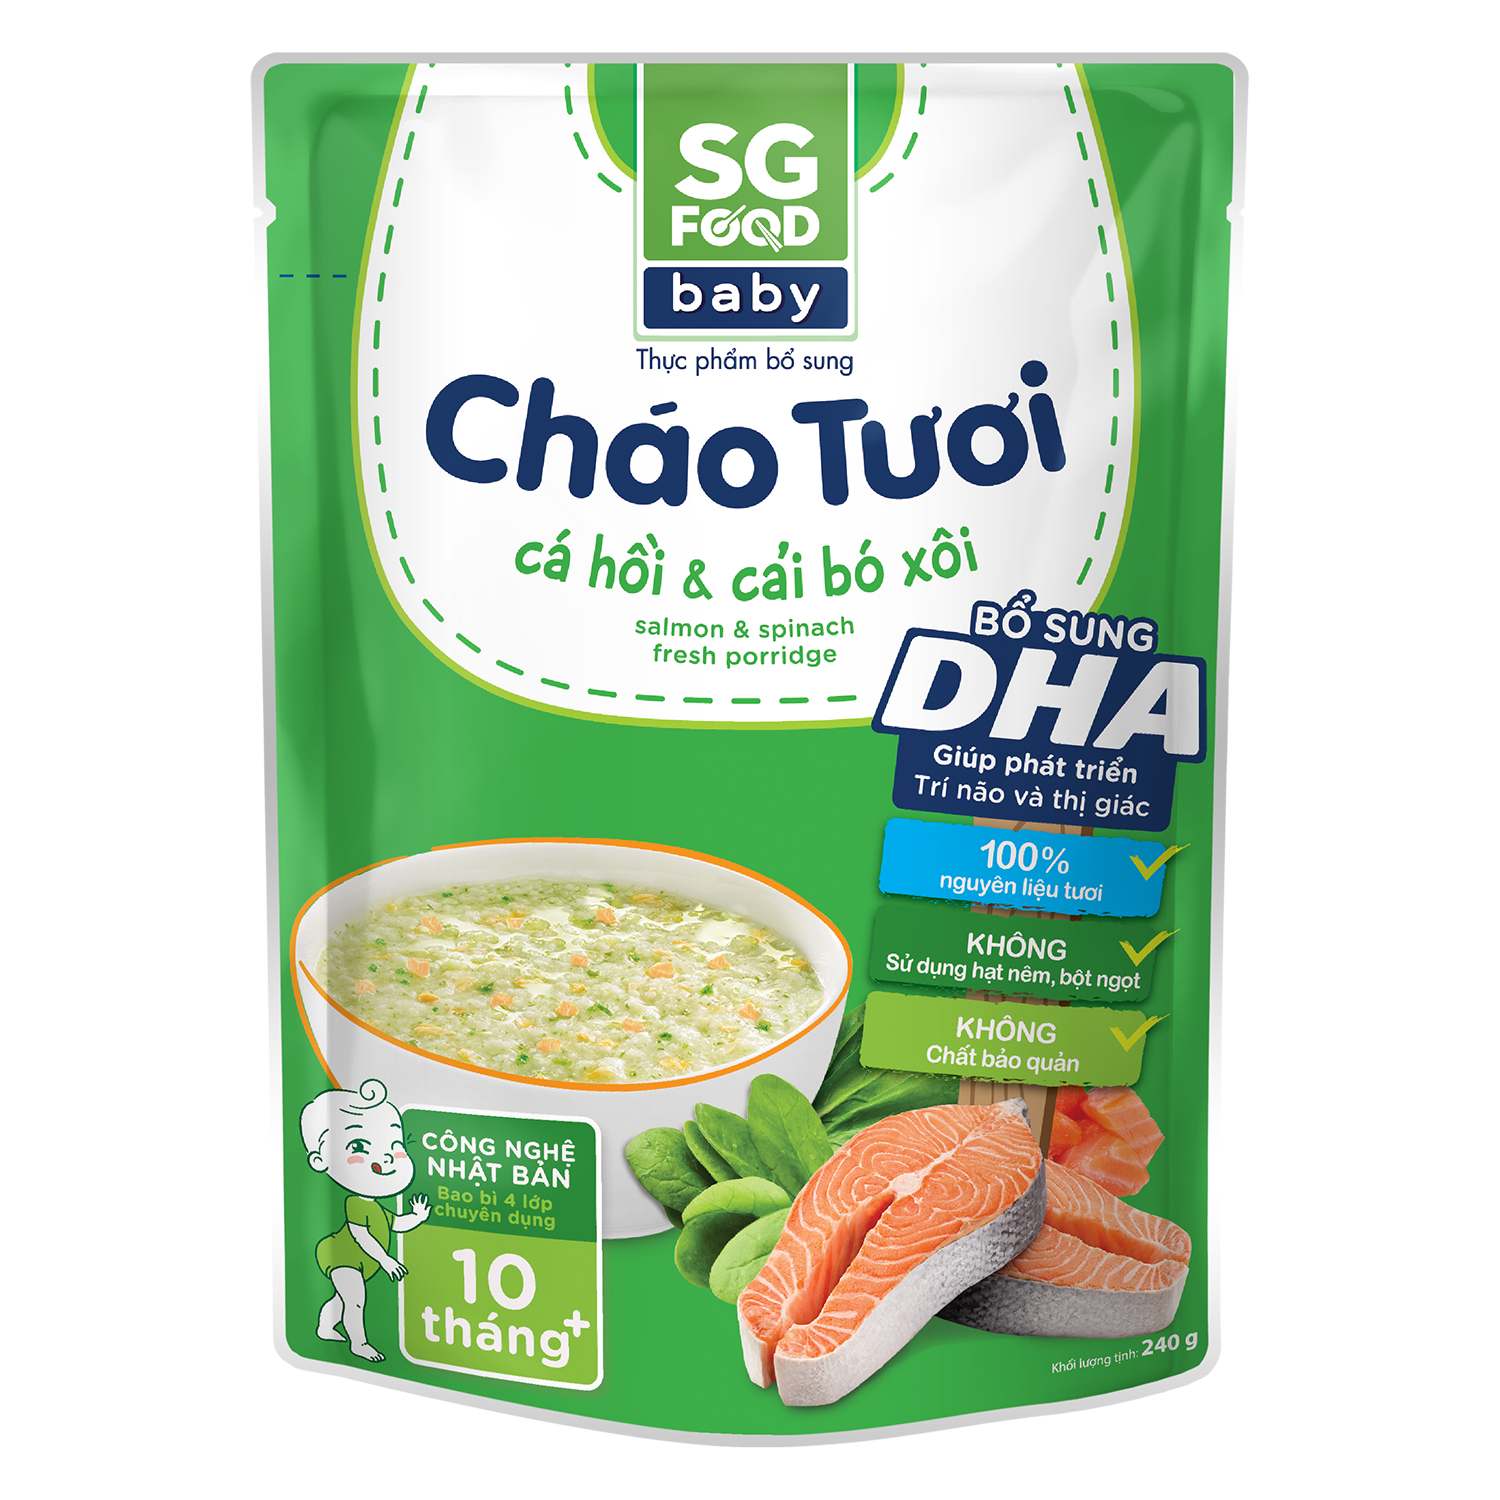 Cháo tươi Sài Gòn Food Baby vị cá hồi - cải bó xôi 10M+